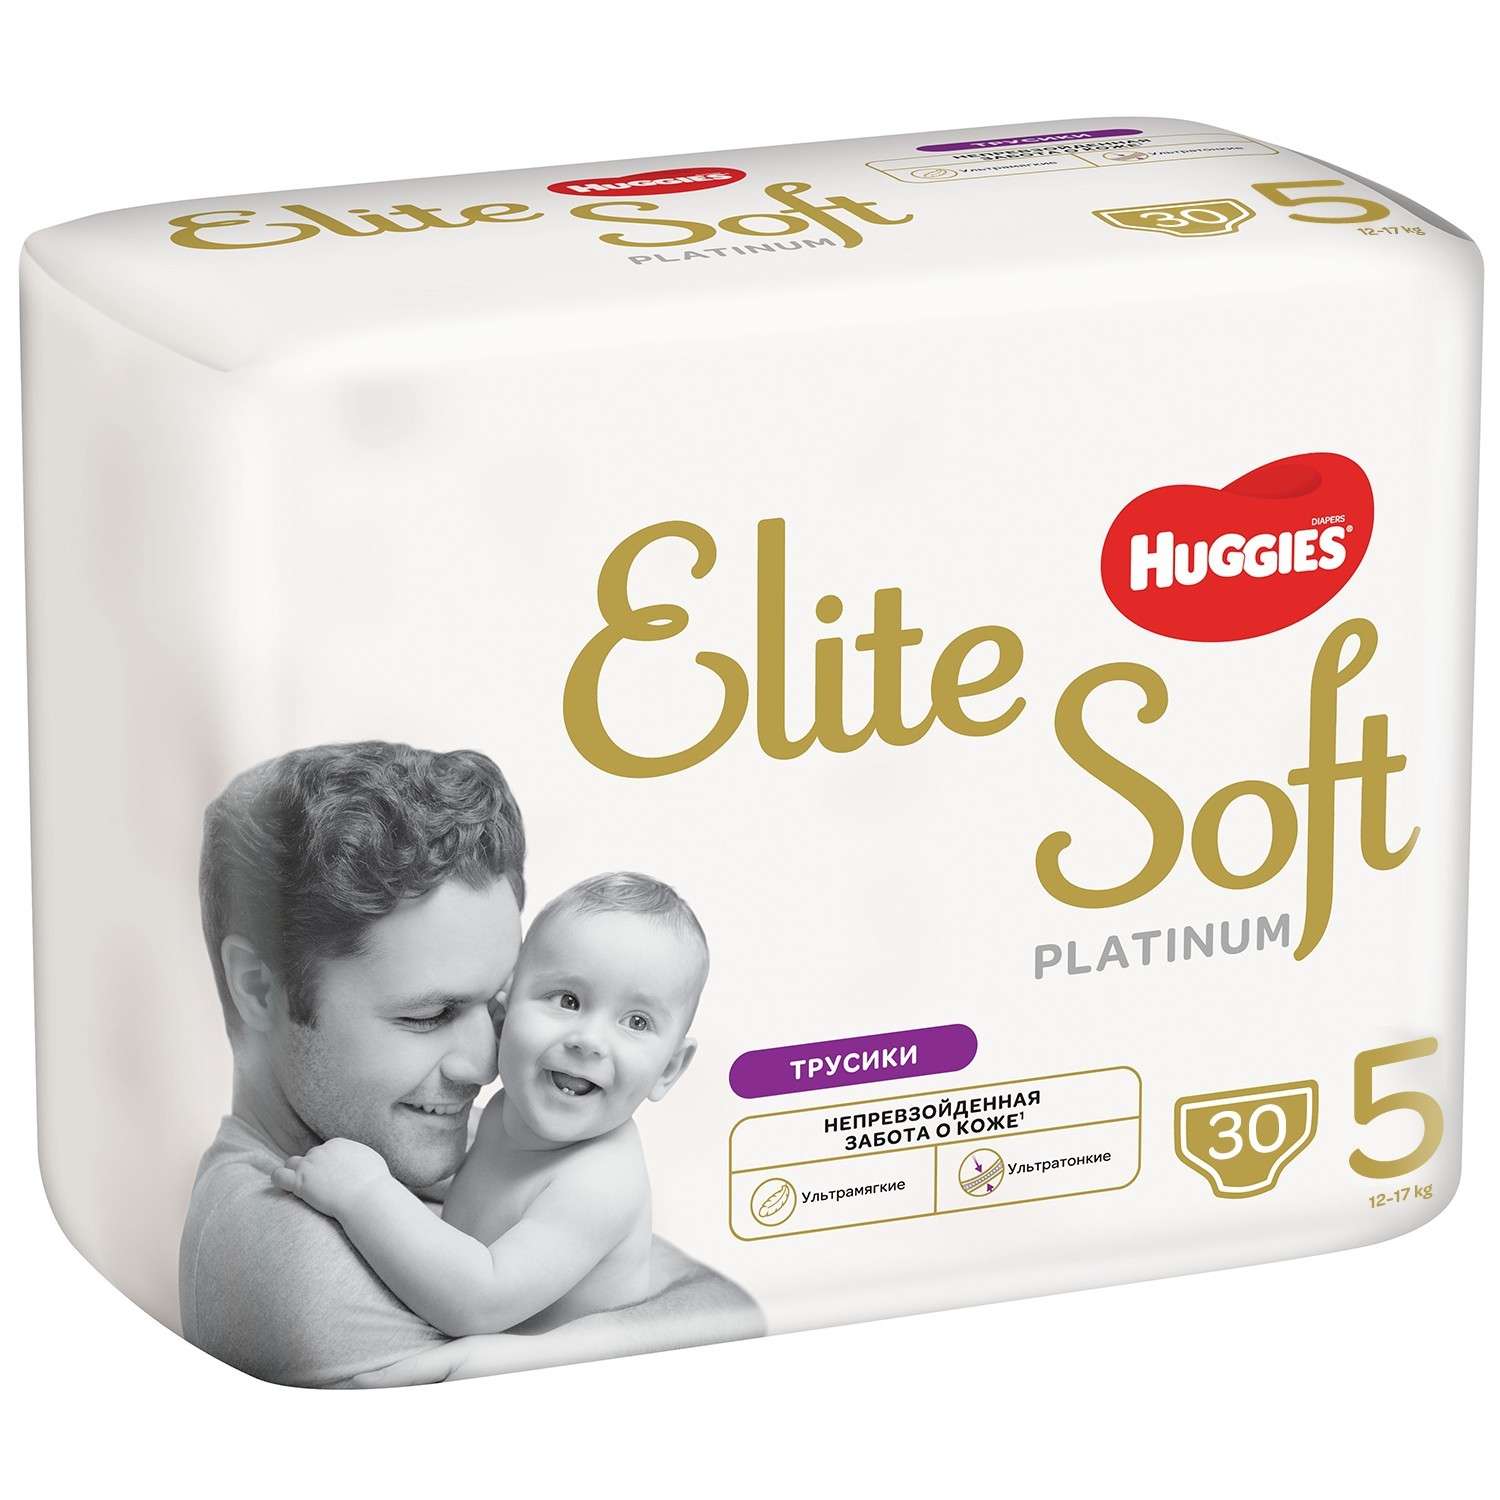 Подгузники-трусики Huggies Elite Soft Platinum 5 12-17кг 30шт - фото 2